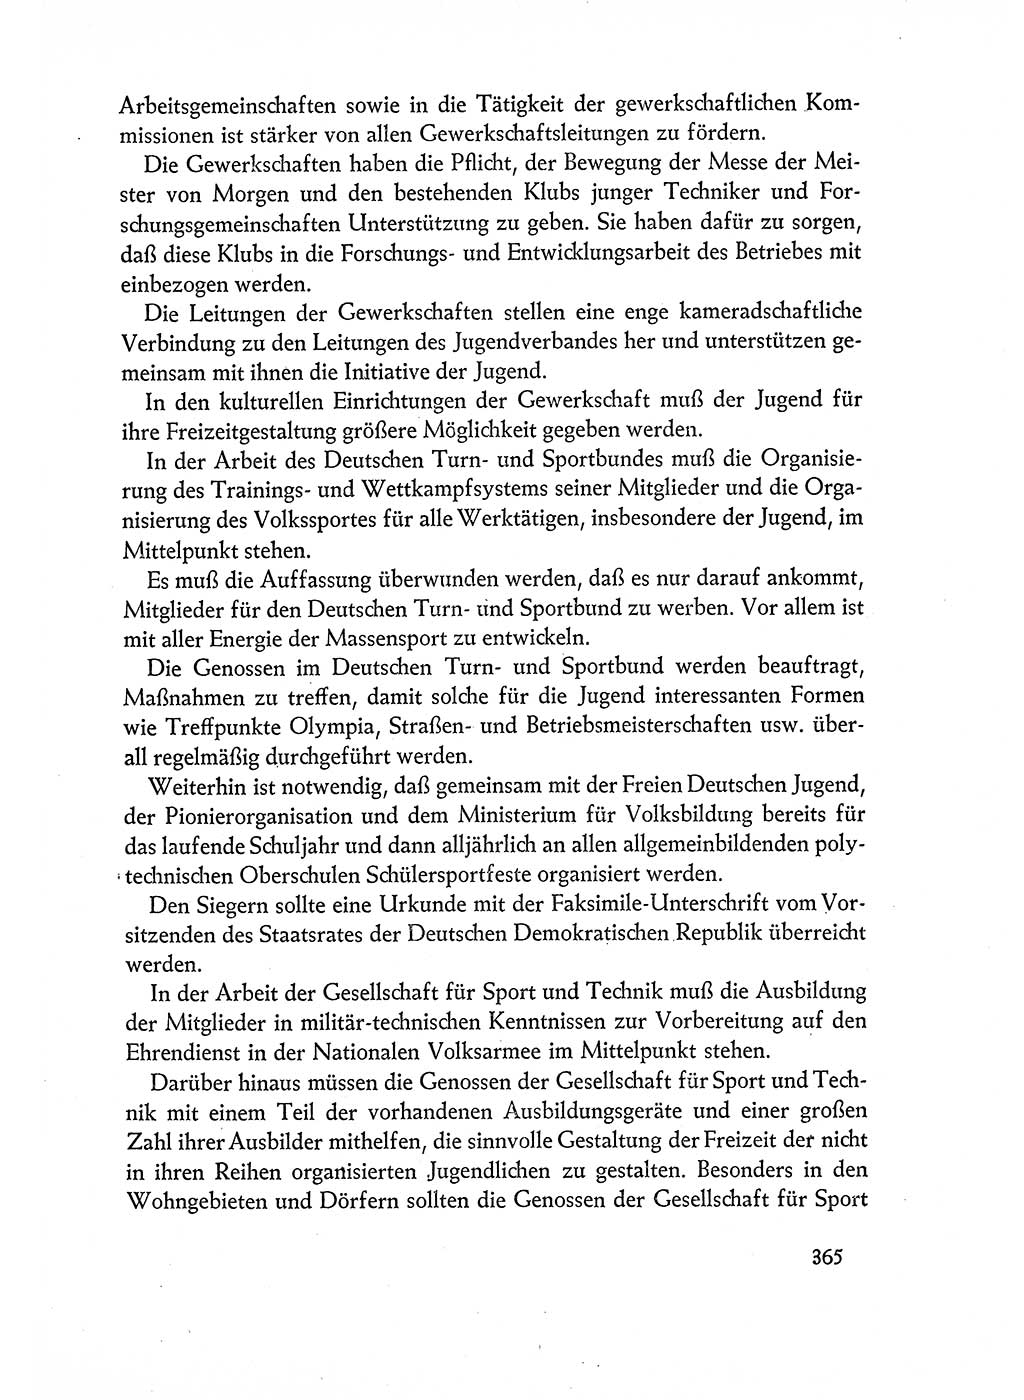 Dokumente der Sozialistischen Einheitspartei Deutschlands (SED) [Deutsche Demokratische Republik (DDR)] 1960-1961, Seite 365 (Dok. SED DDR 1960-1961, S. 365)